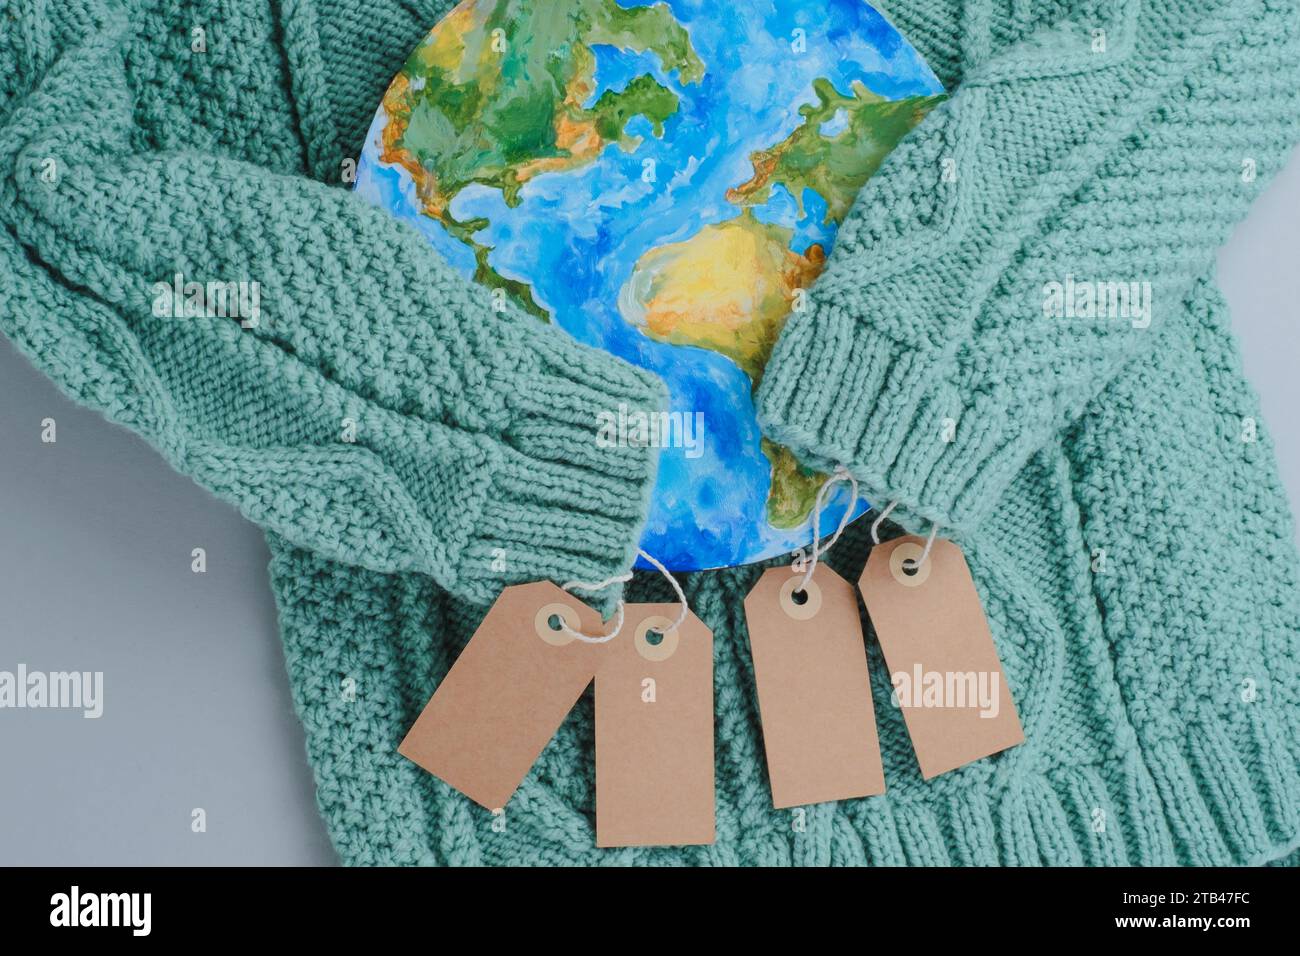 Ärmel aus Strickpullover umarmen den Planeten mit Tags. Kleidung für verantwortungsbewussten Konsum. Umweltfreundlichkeit und nachhaltige Mode. Stockfoto